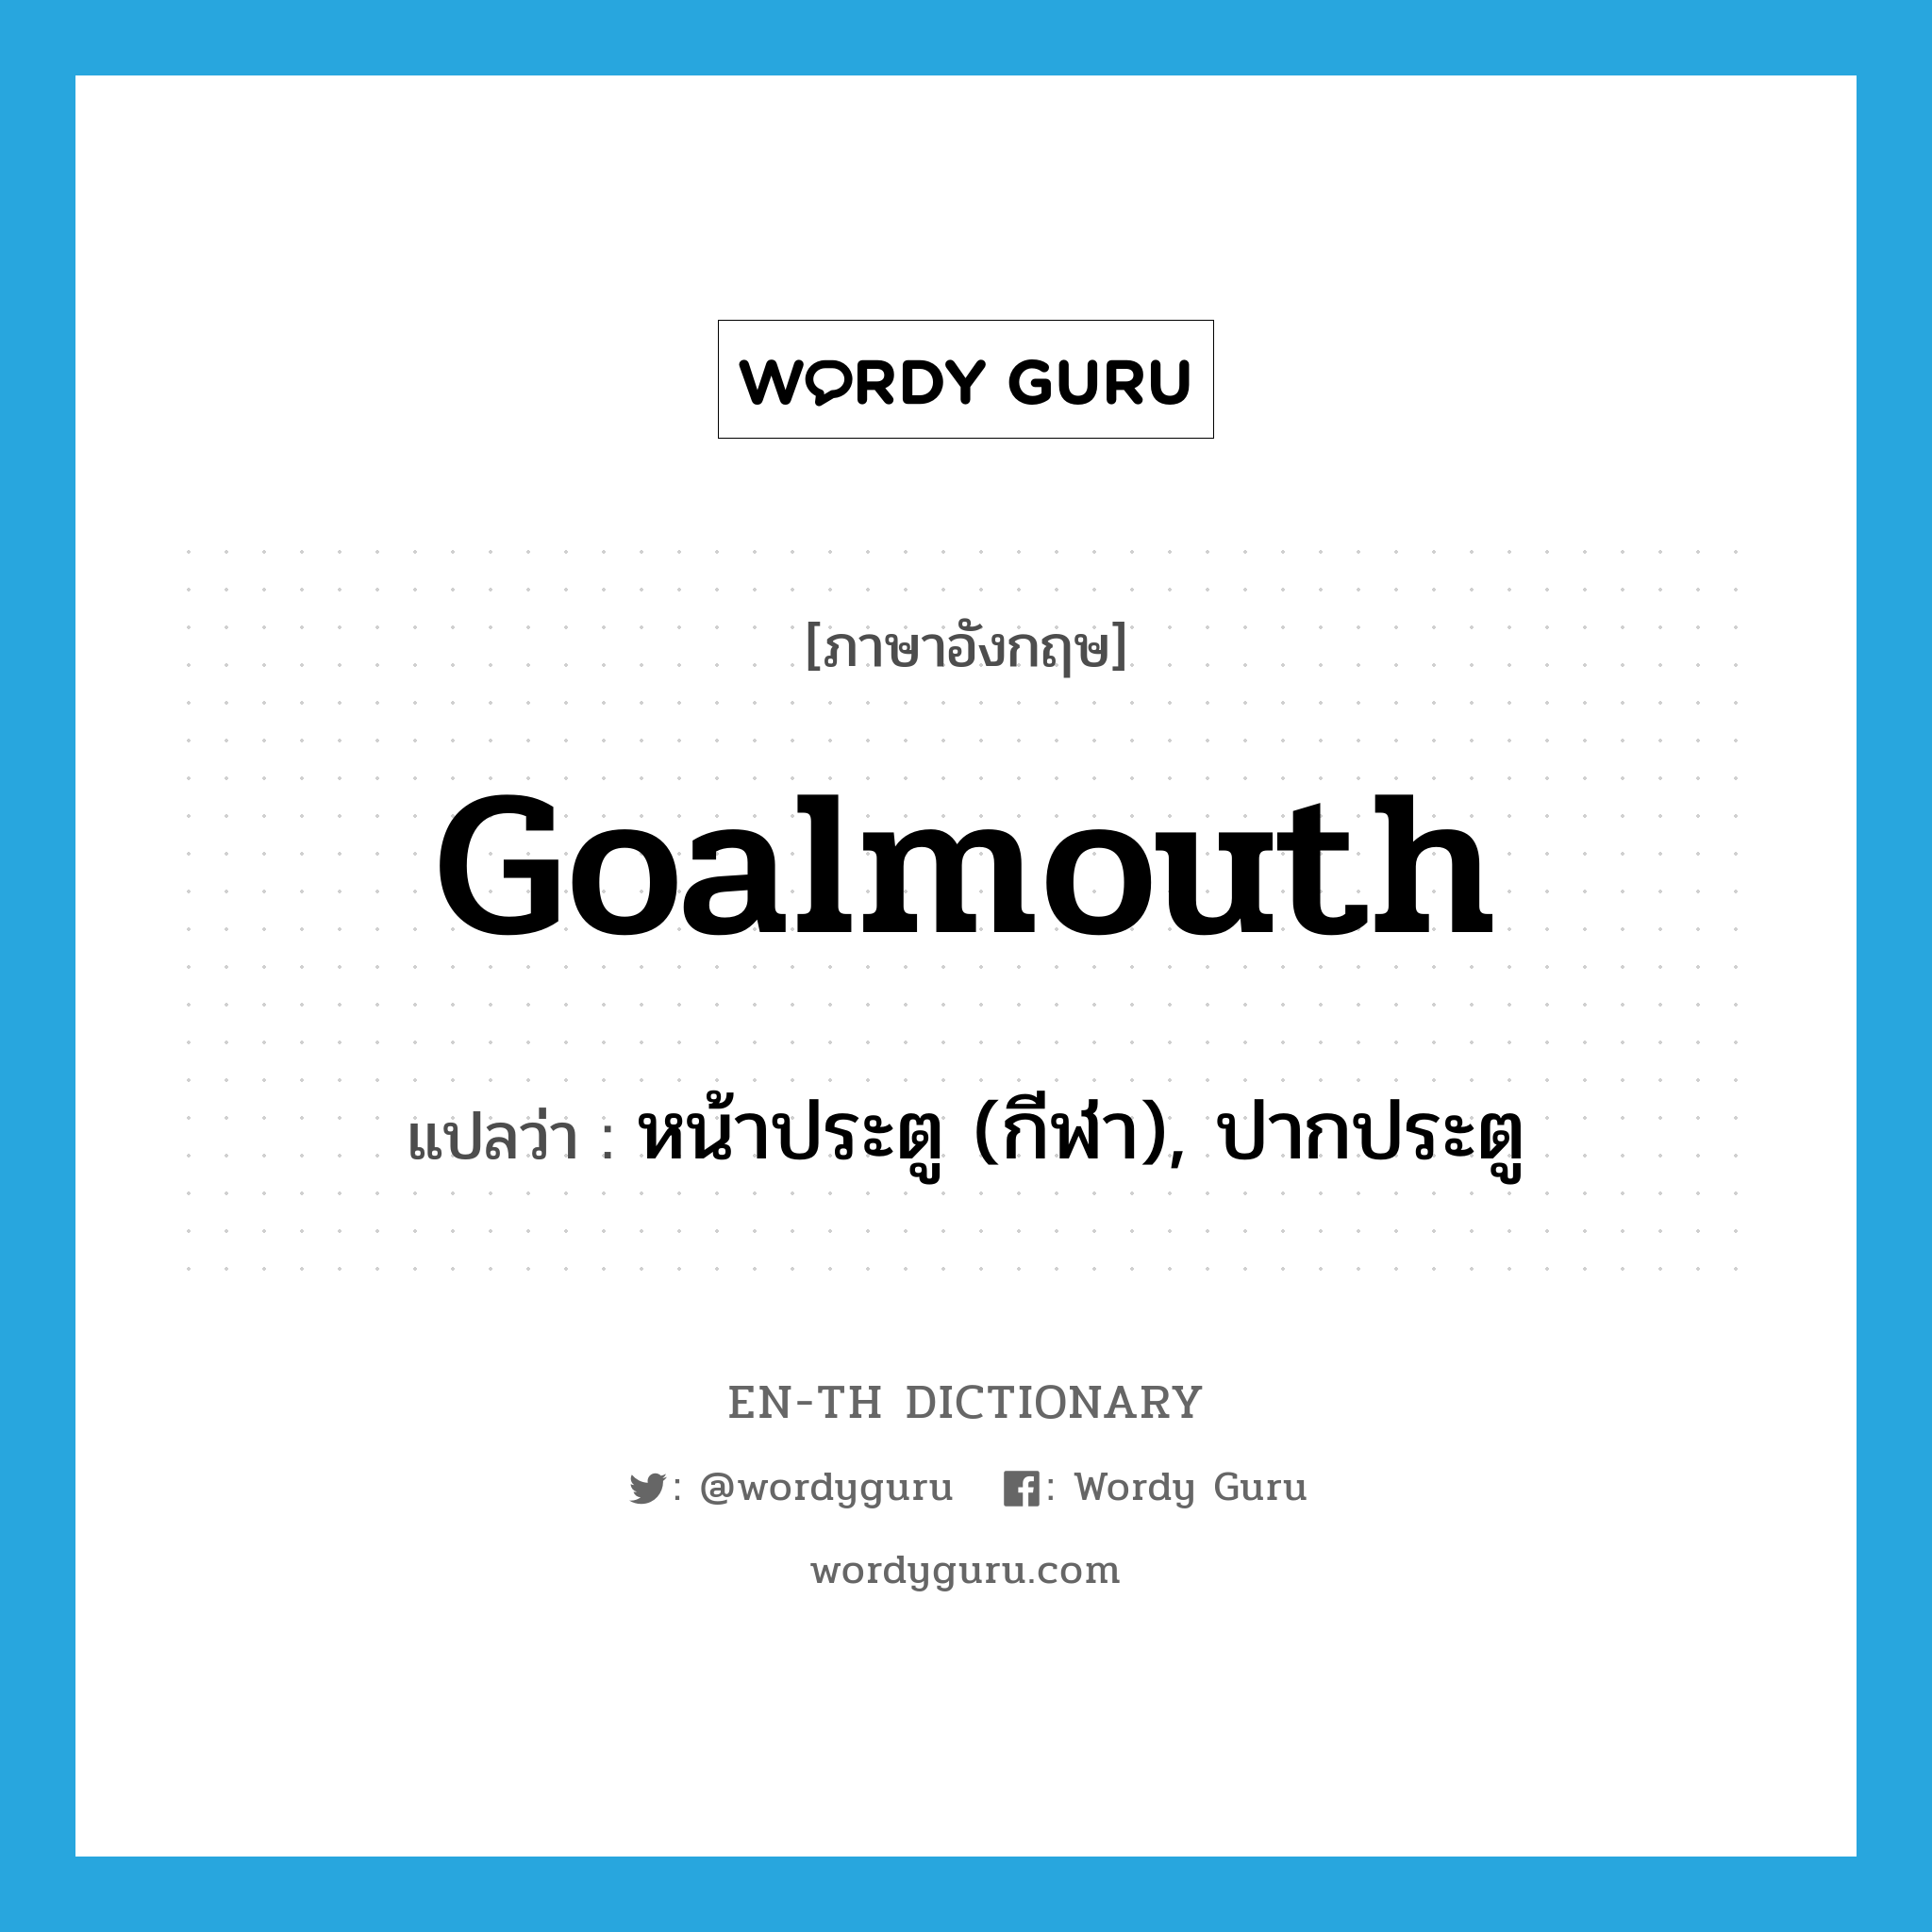 goalmouth แปลว่า?, คำศัพท์ภาษาอังกฤษ goalmouth แปลว่า หน้าประตู (กีฬา), ปากประตู ประเภท N หมวด N